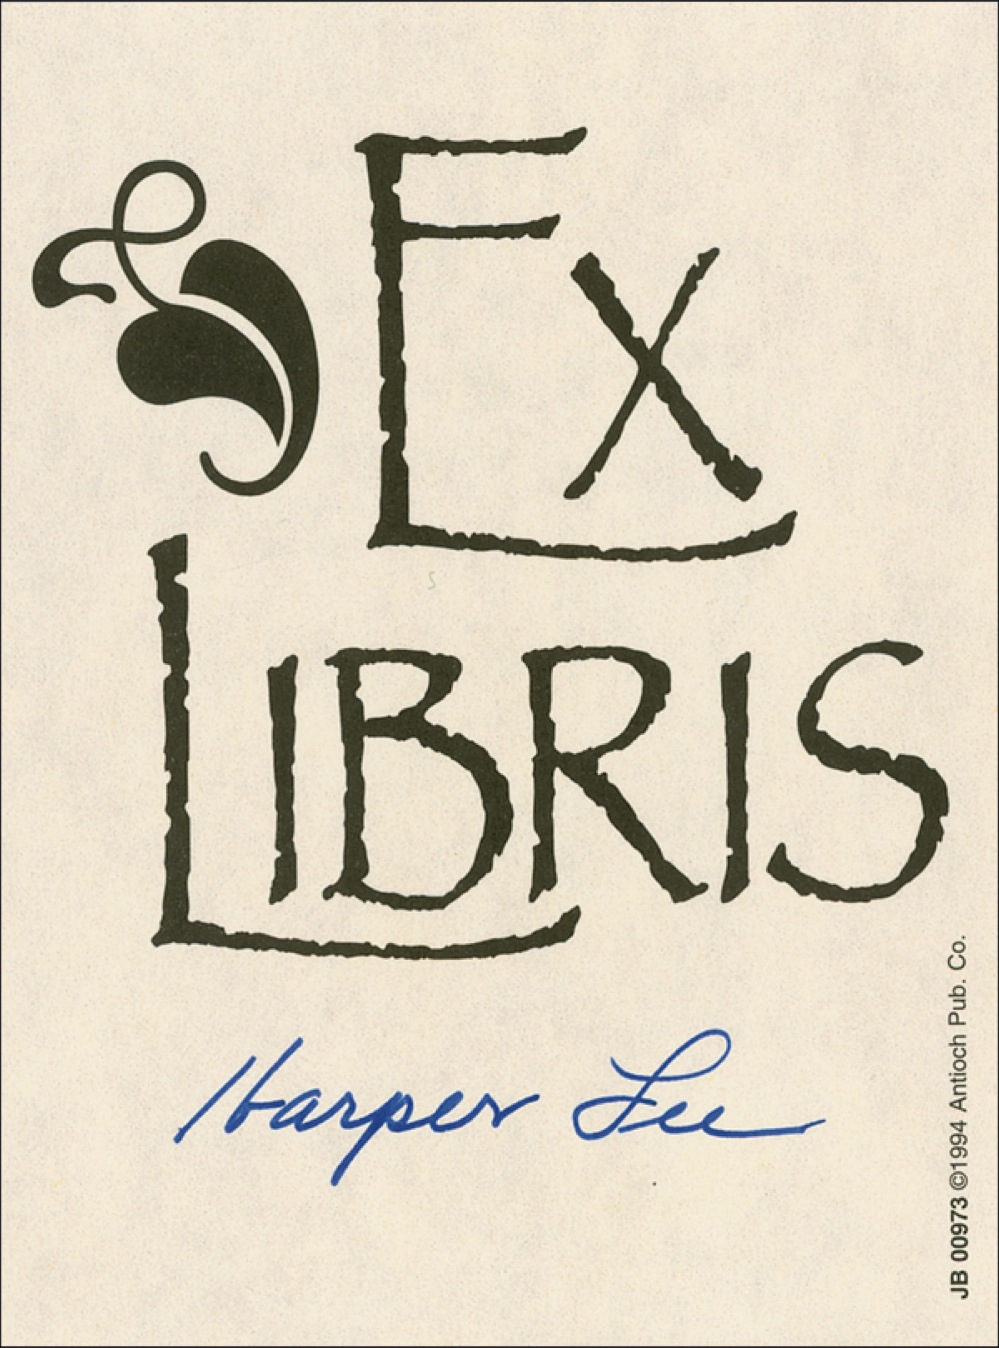 Lot #537 Harper Lee